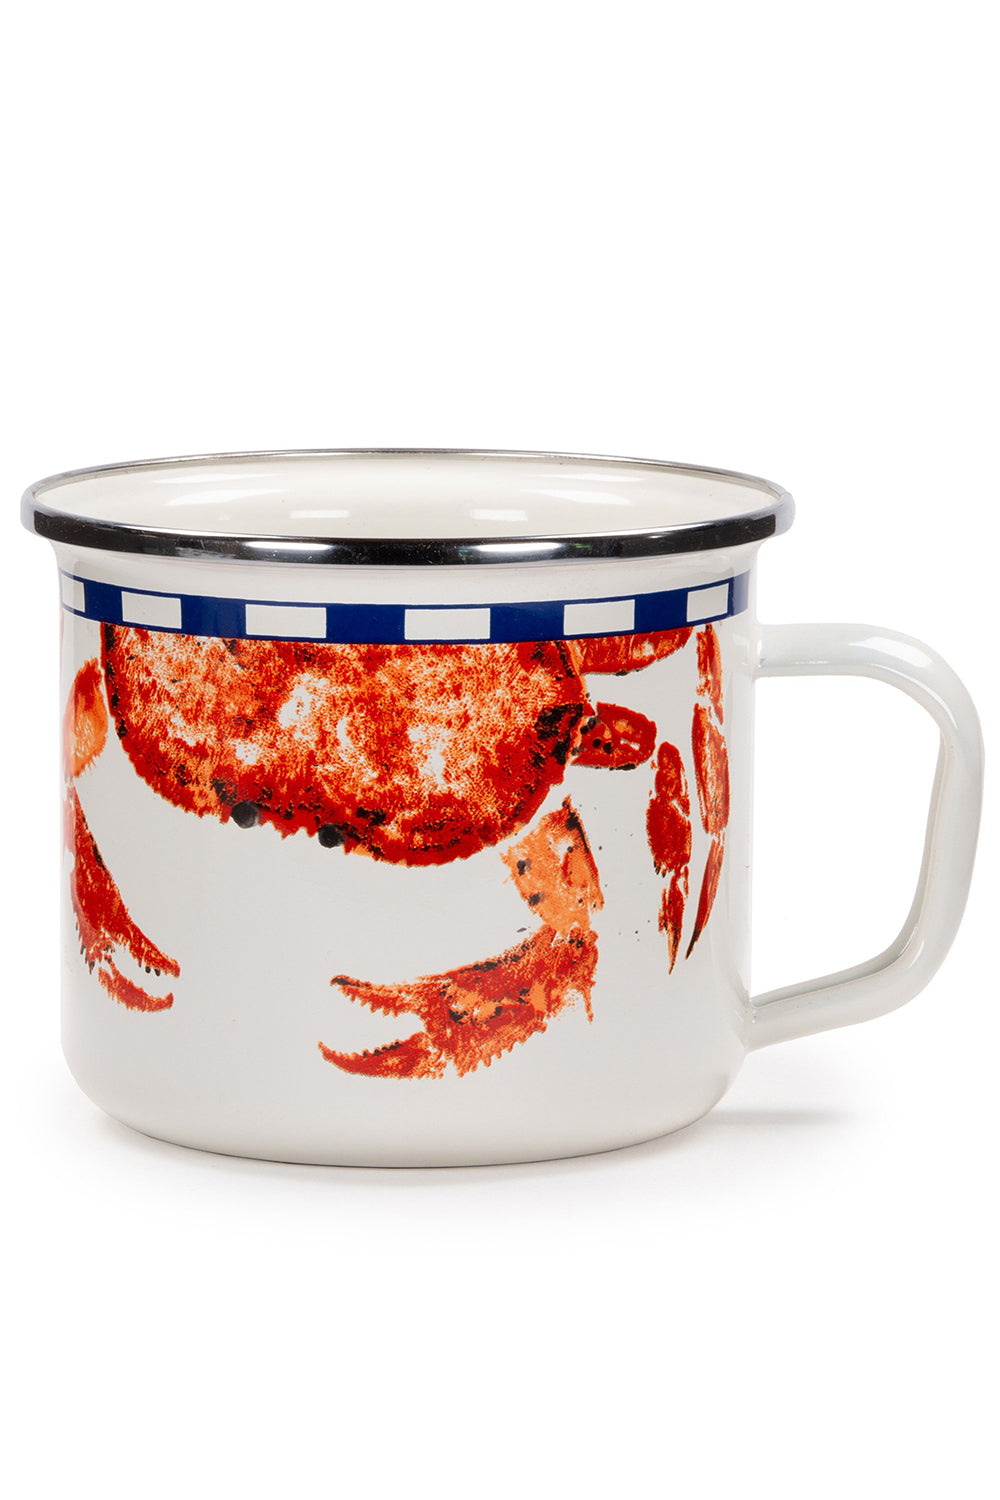 Grande Mug - Red Crab